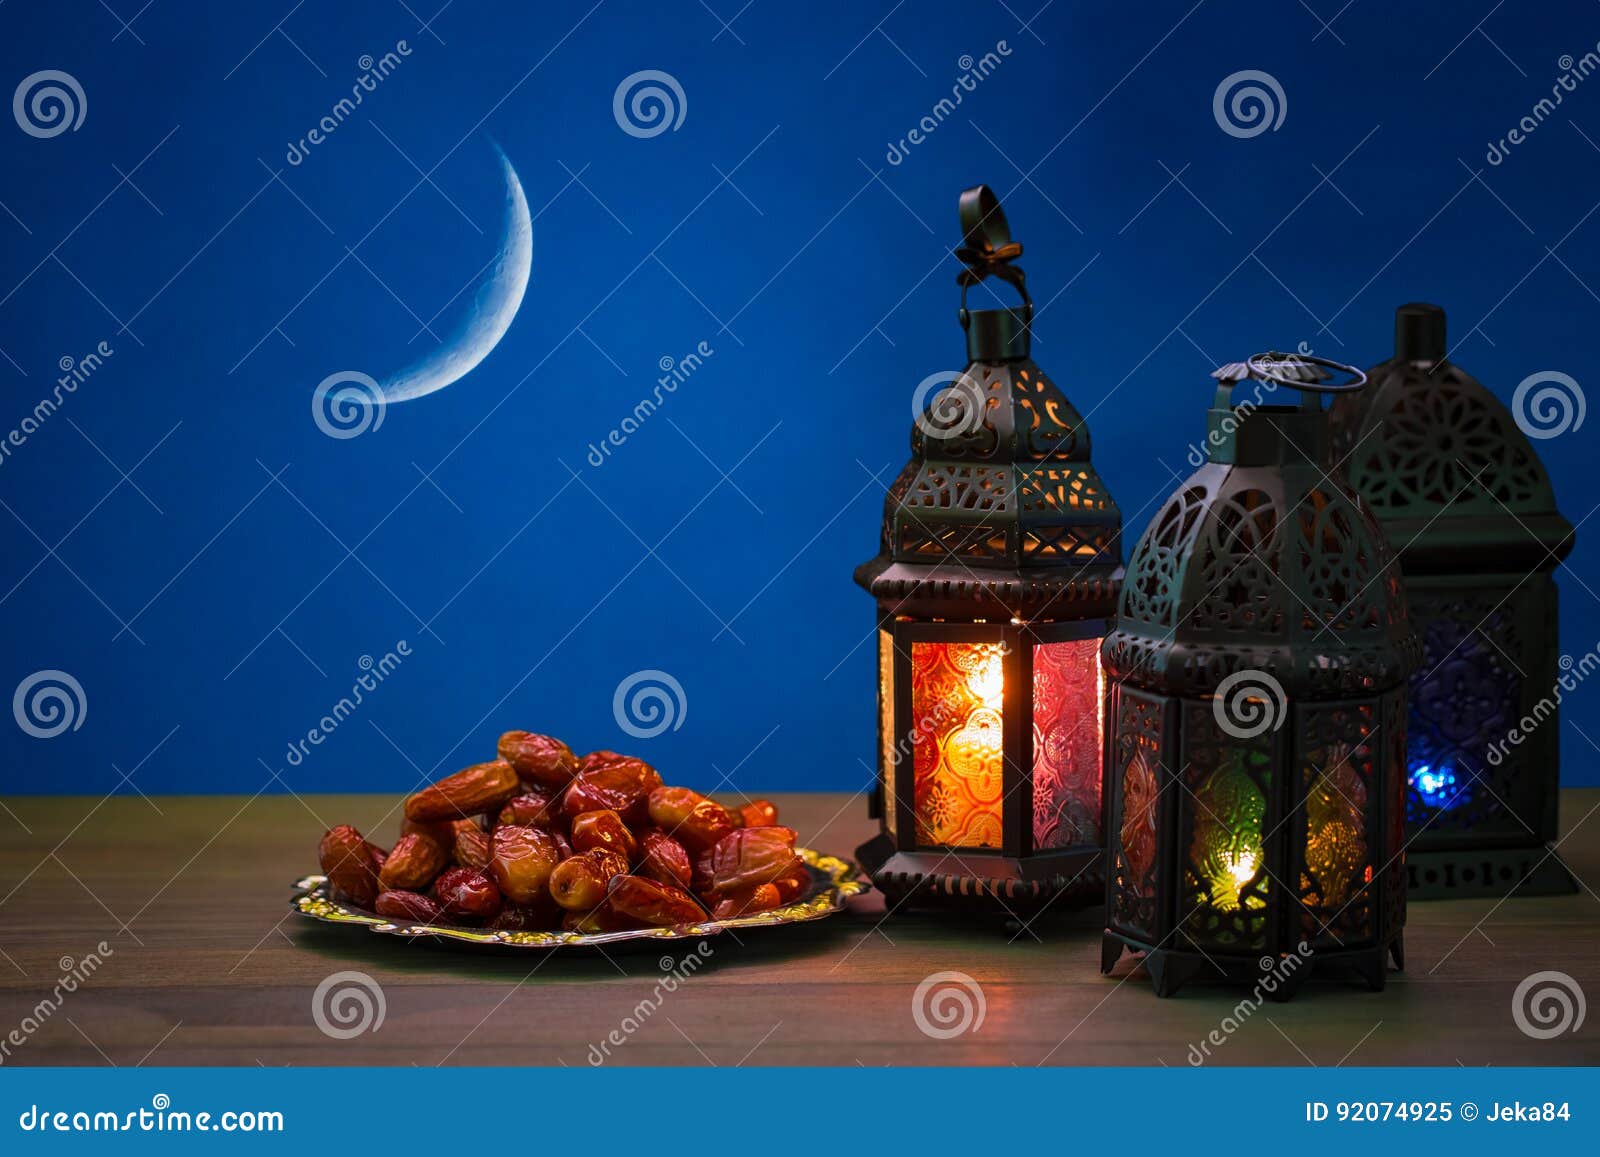 Das Moslemische Fest Des Heiligen Monats Von Ramadan ...